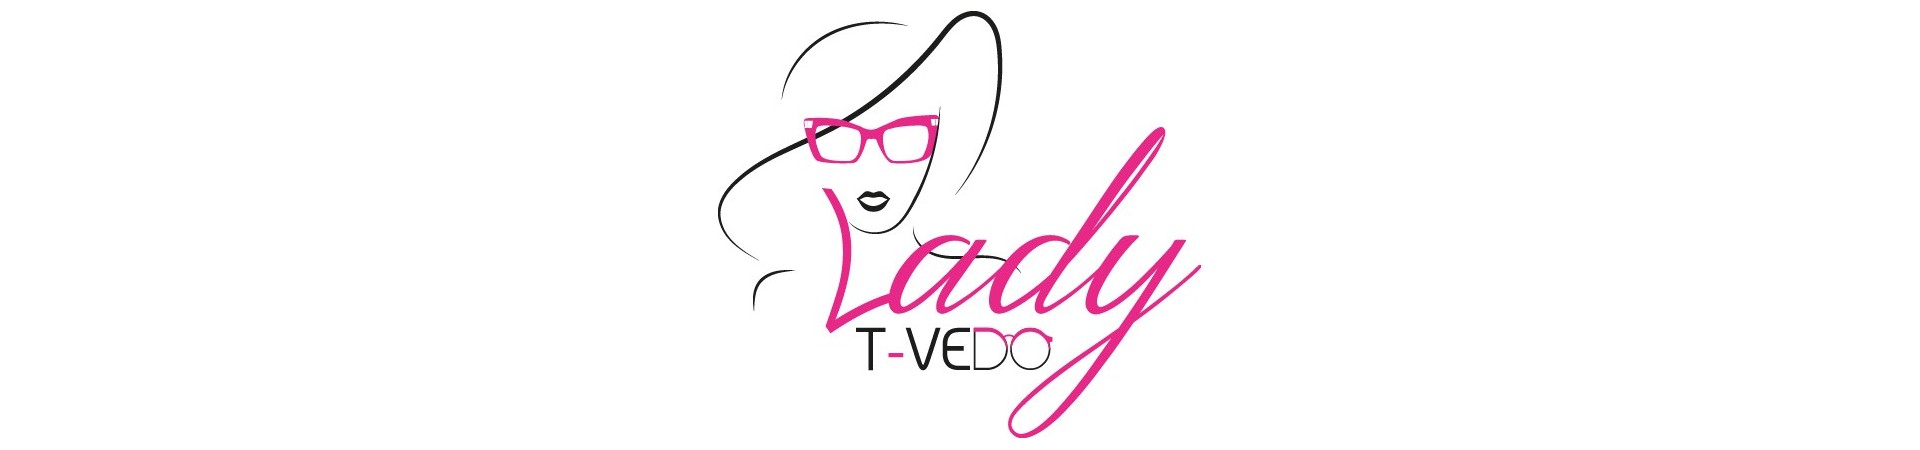 T-Vedo Lady